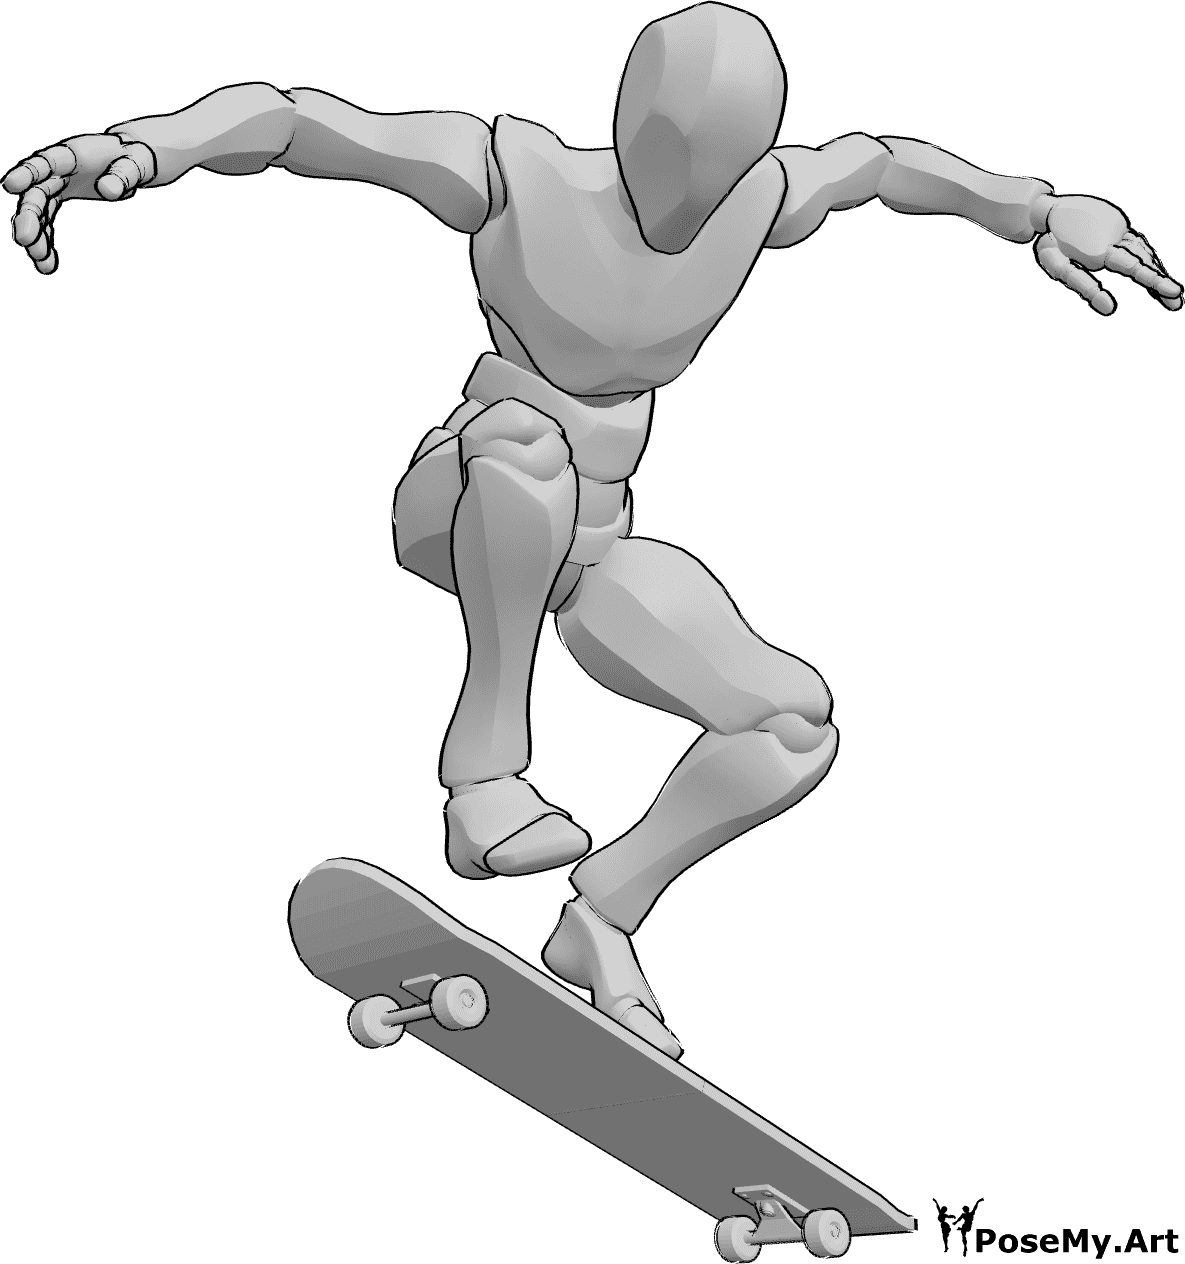 Referencia de poses- Postura kickflip en monopatín - Hombre en monopatín, haciendo un kickflip en el aire, referencia de dibujo de monopatín